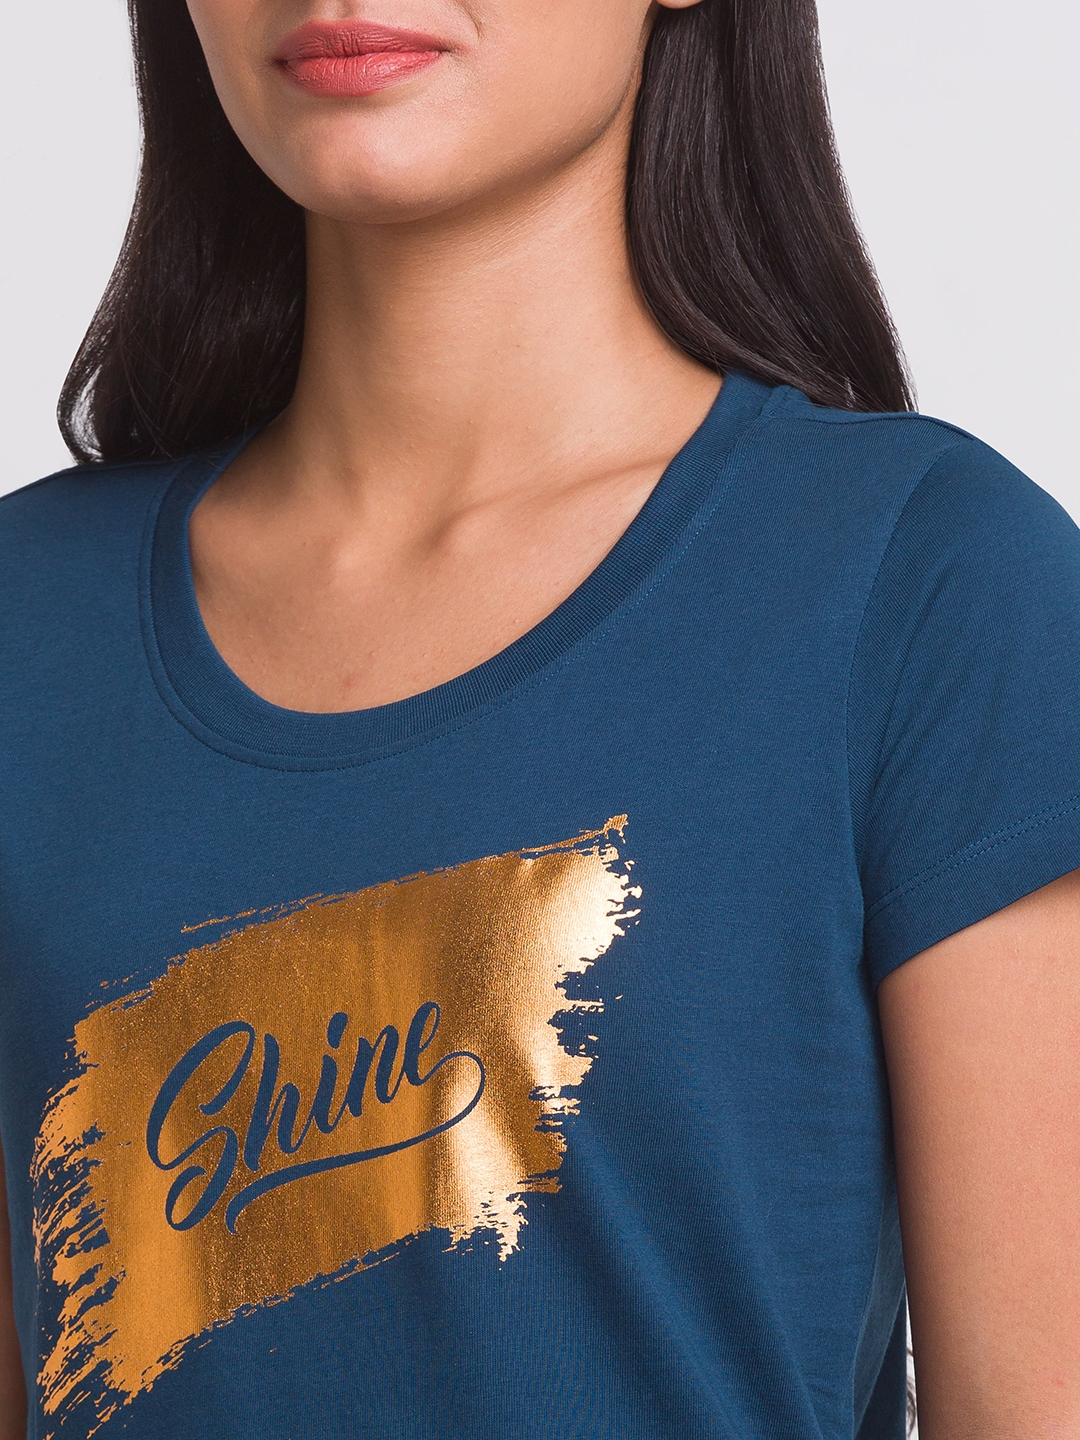 Globus Teal Printed Tshirt